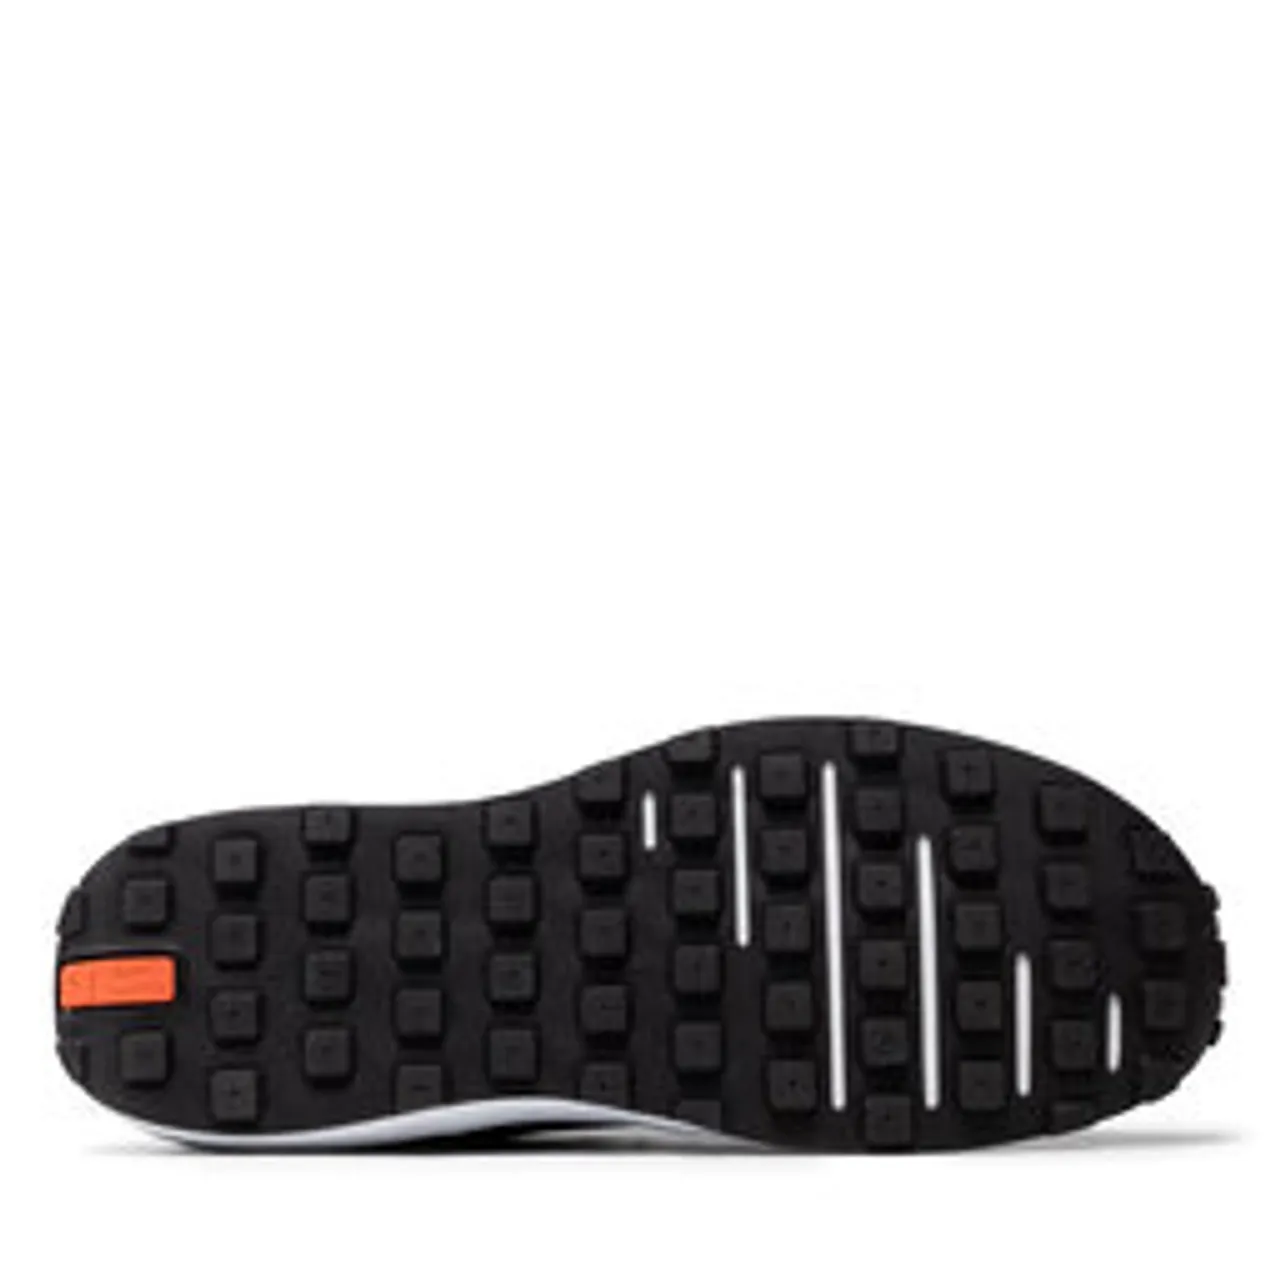 Schuhe Nike Waffle One DA7995 001 Black/Black/White/Orange